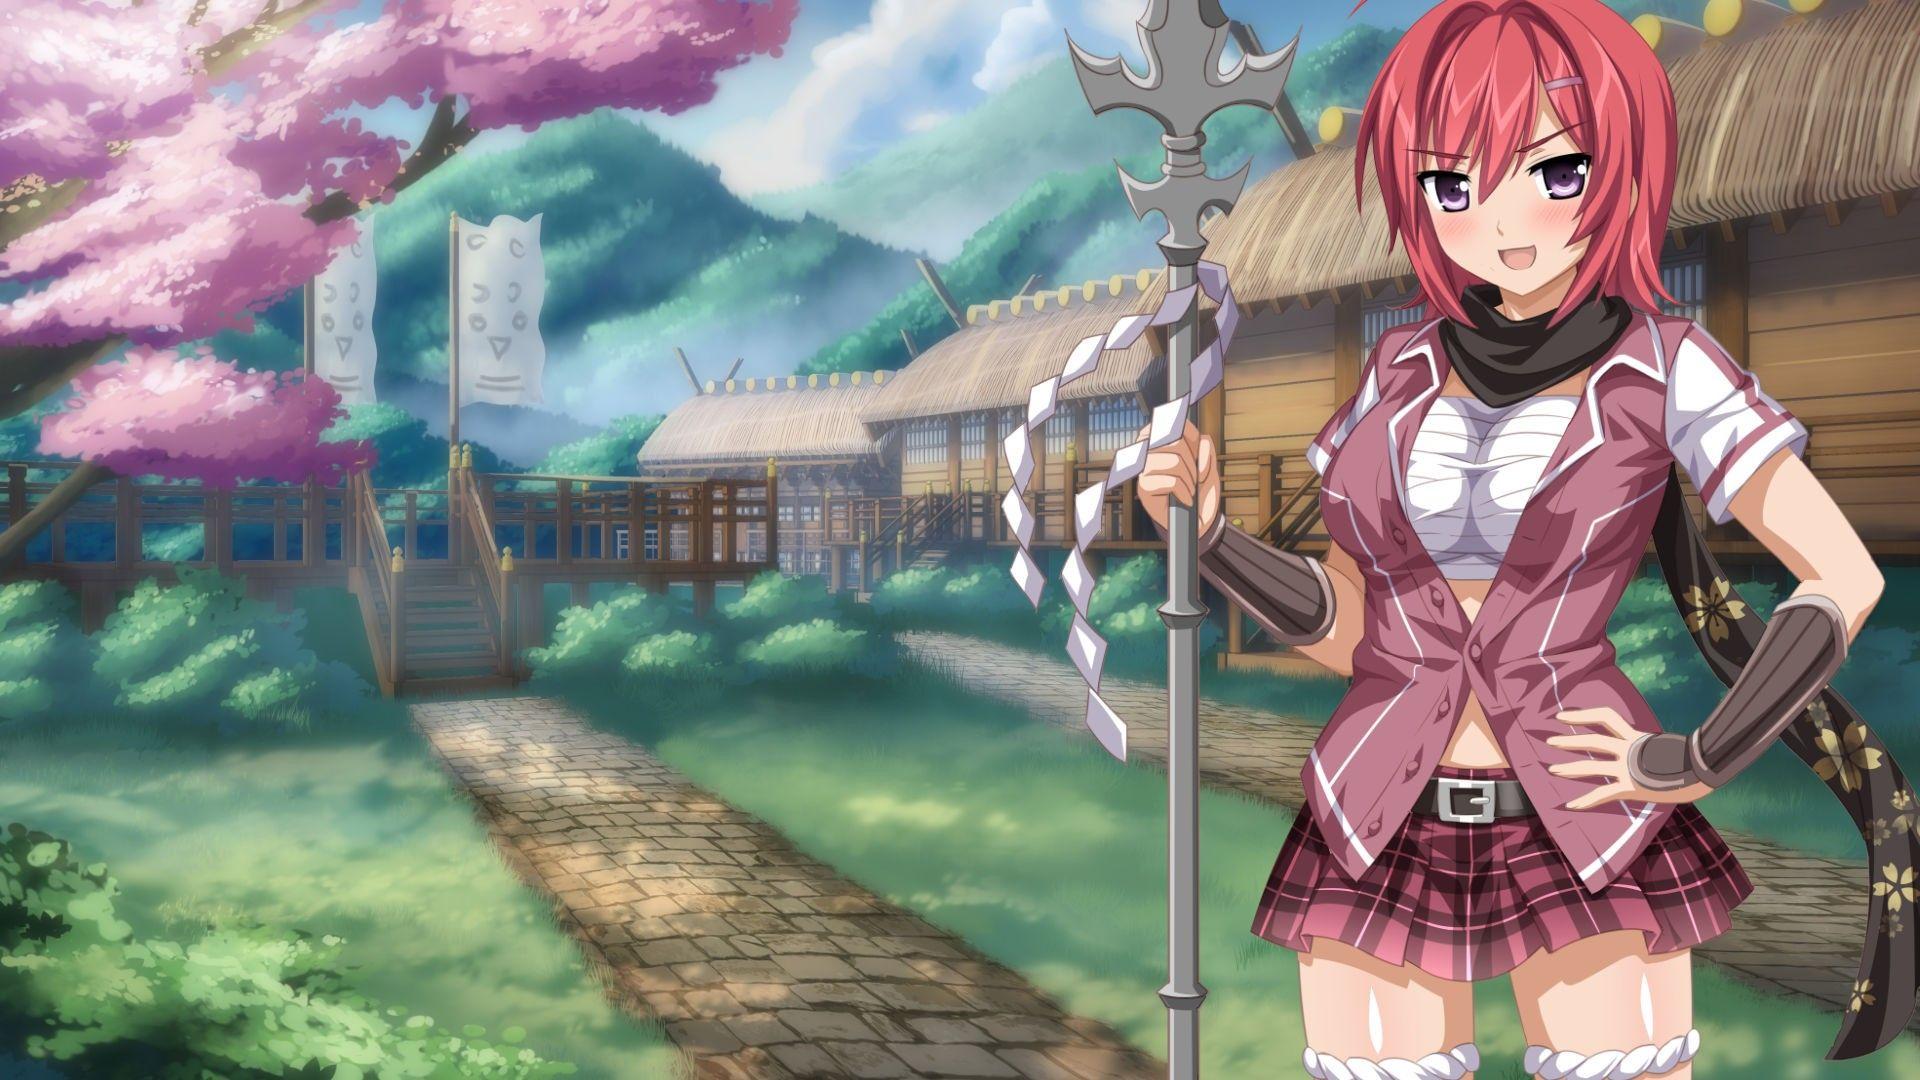 Wallpaper, anime girls, mythology, ecchi, Sakura Spirit, screenshot